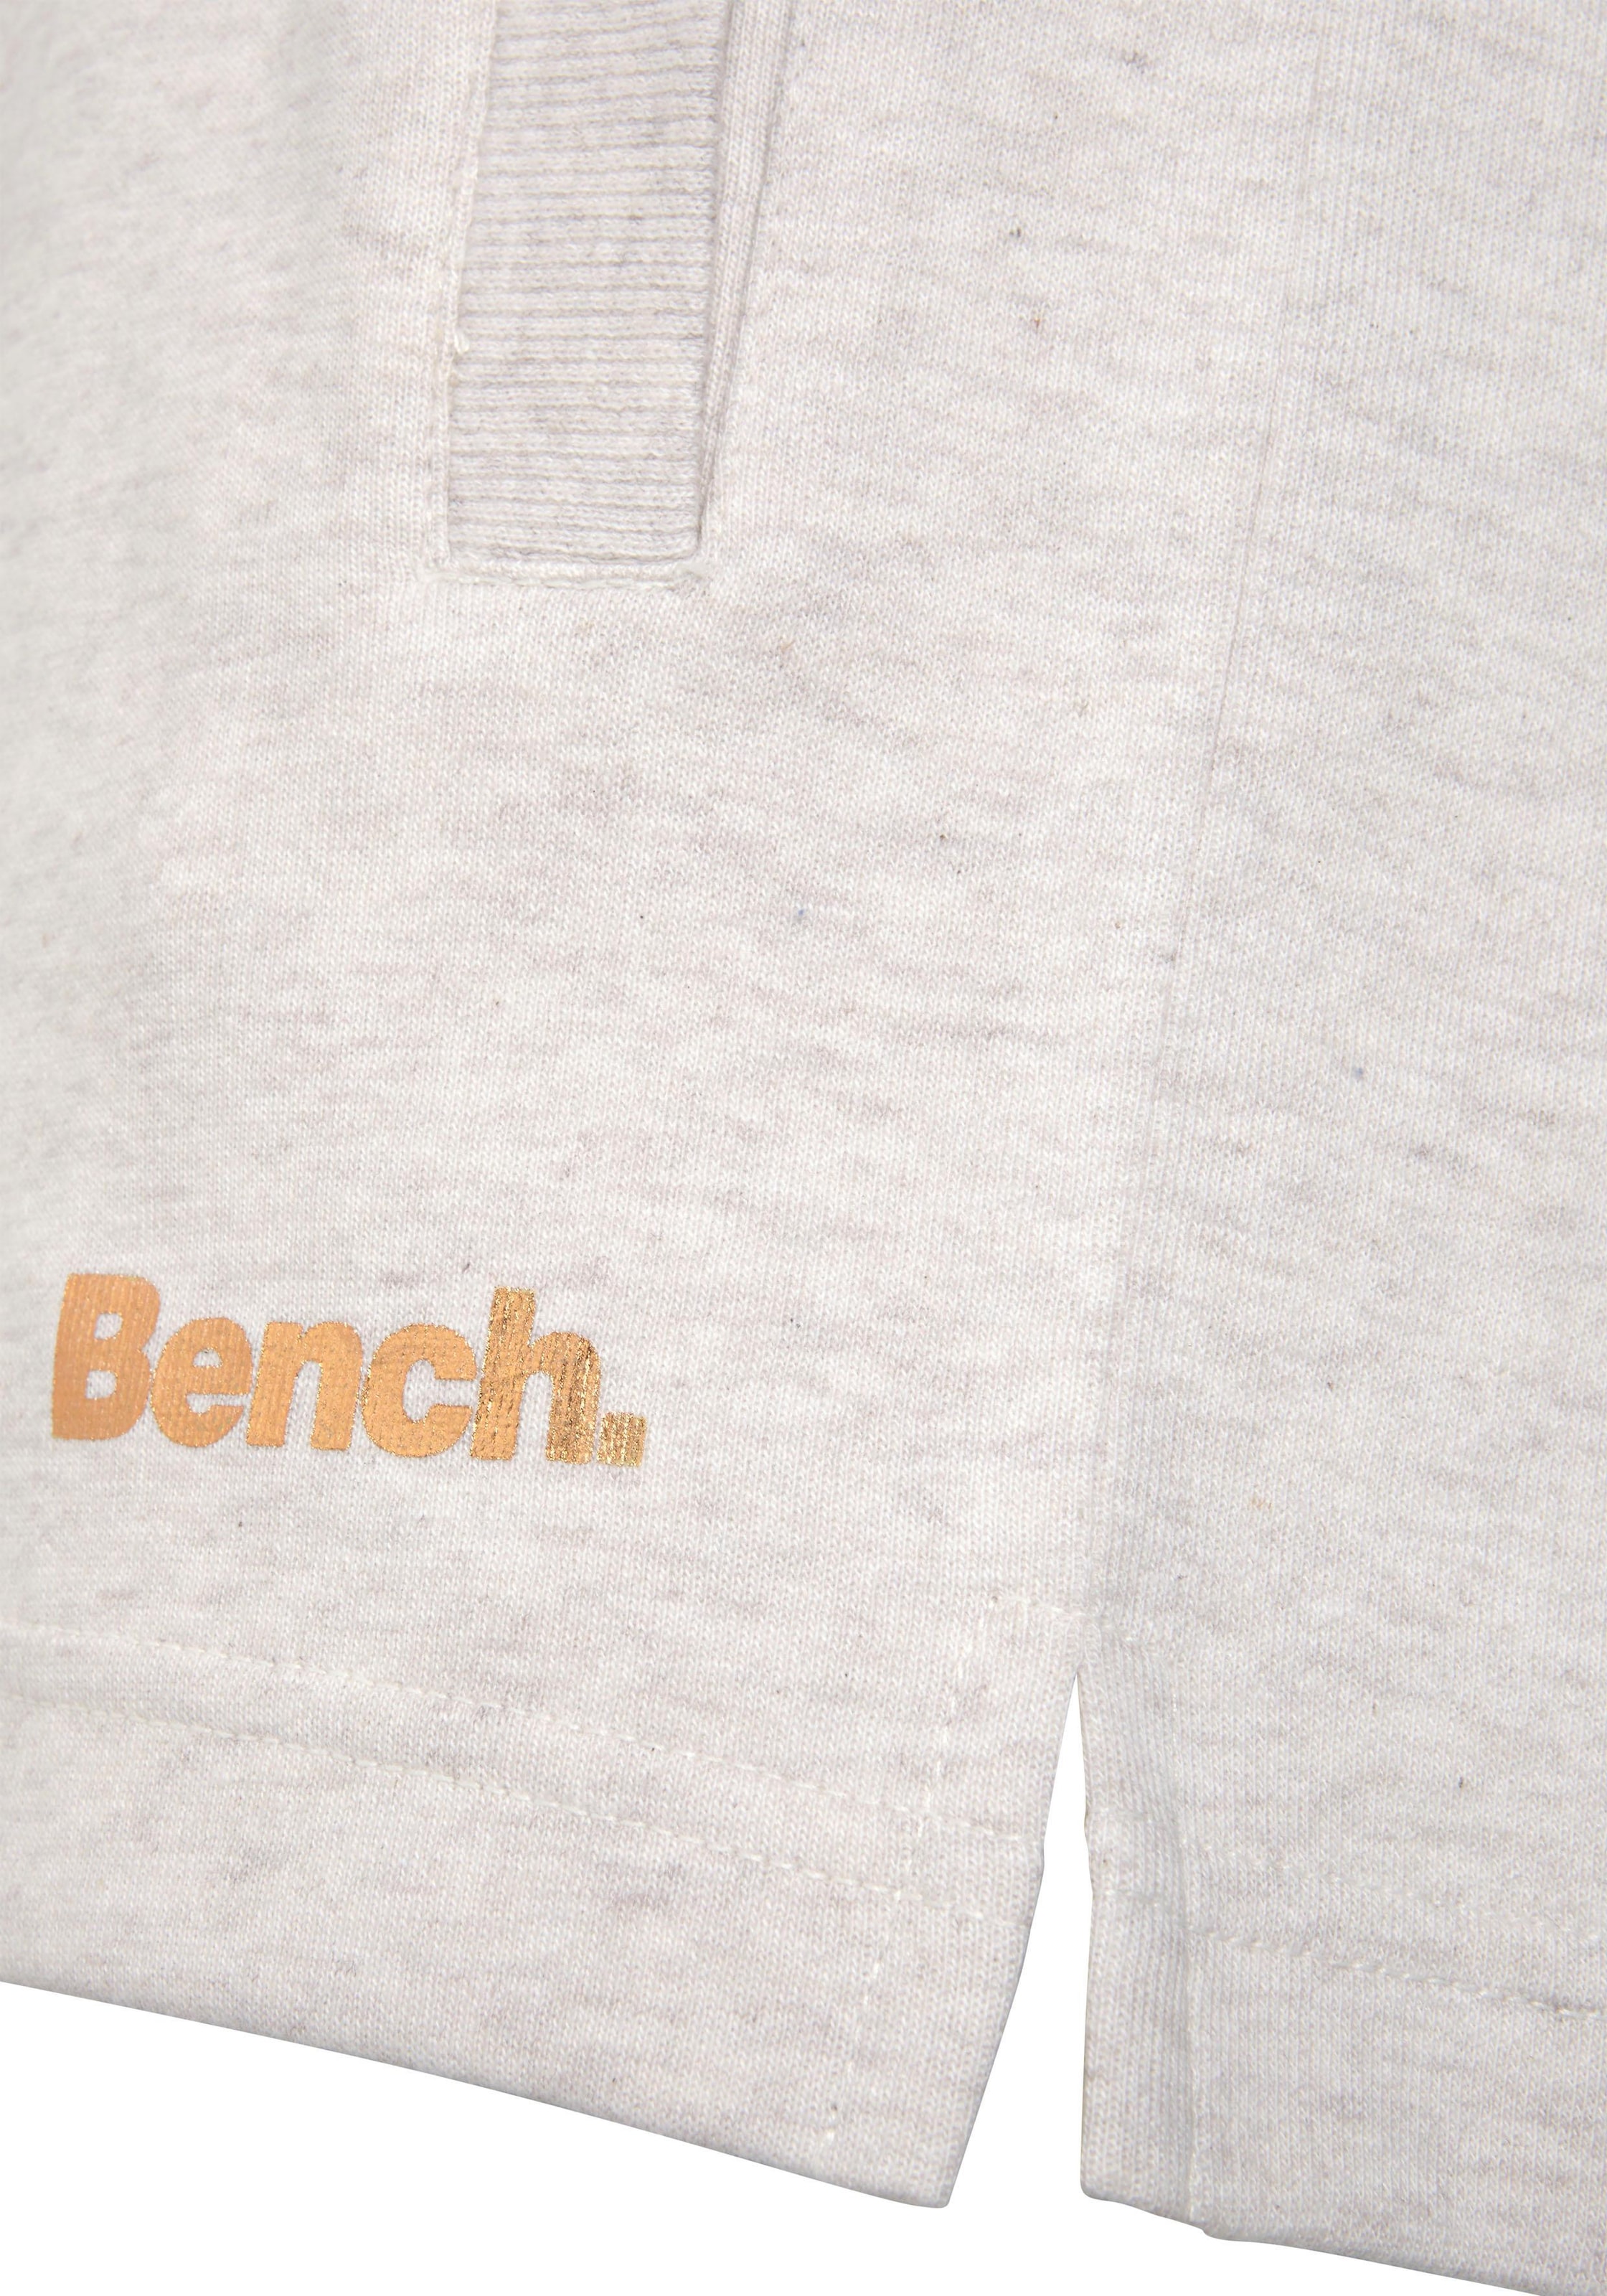 Bench. Loungewear Relaxshorts »-Kurze Sweathose«, mit kurzen Seitenschlitzen und seitliche Taschen, Loungeanzug